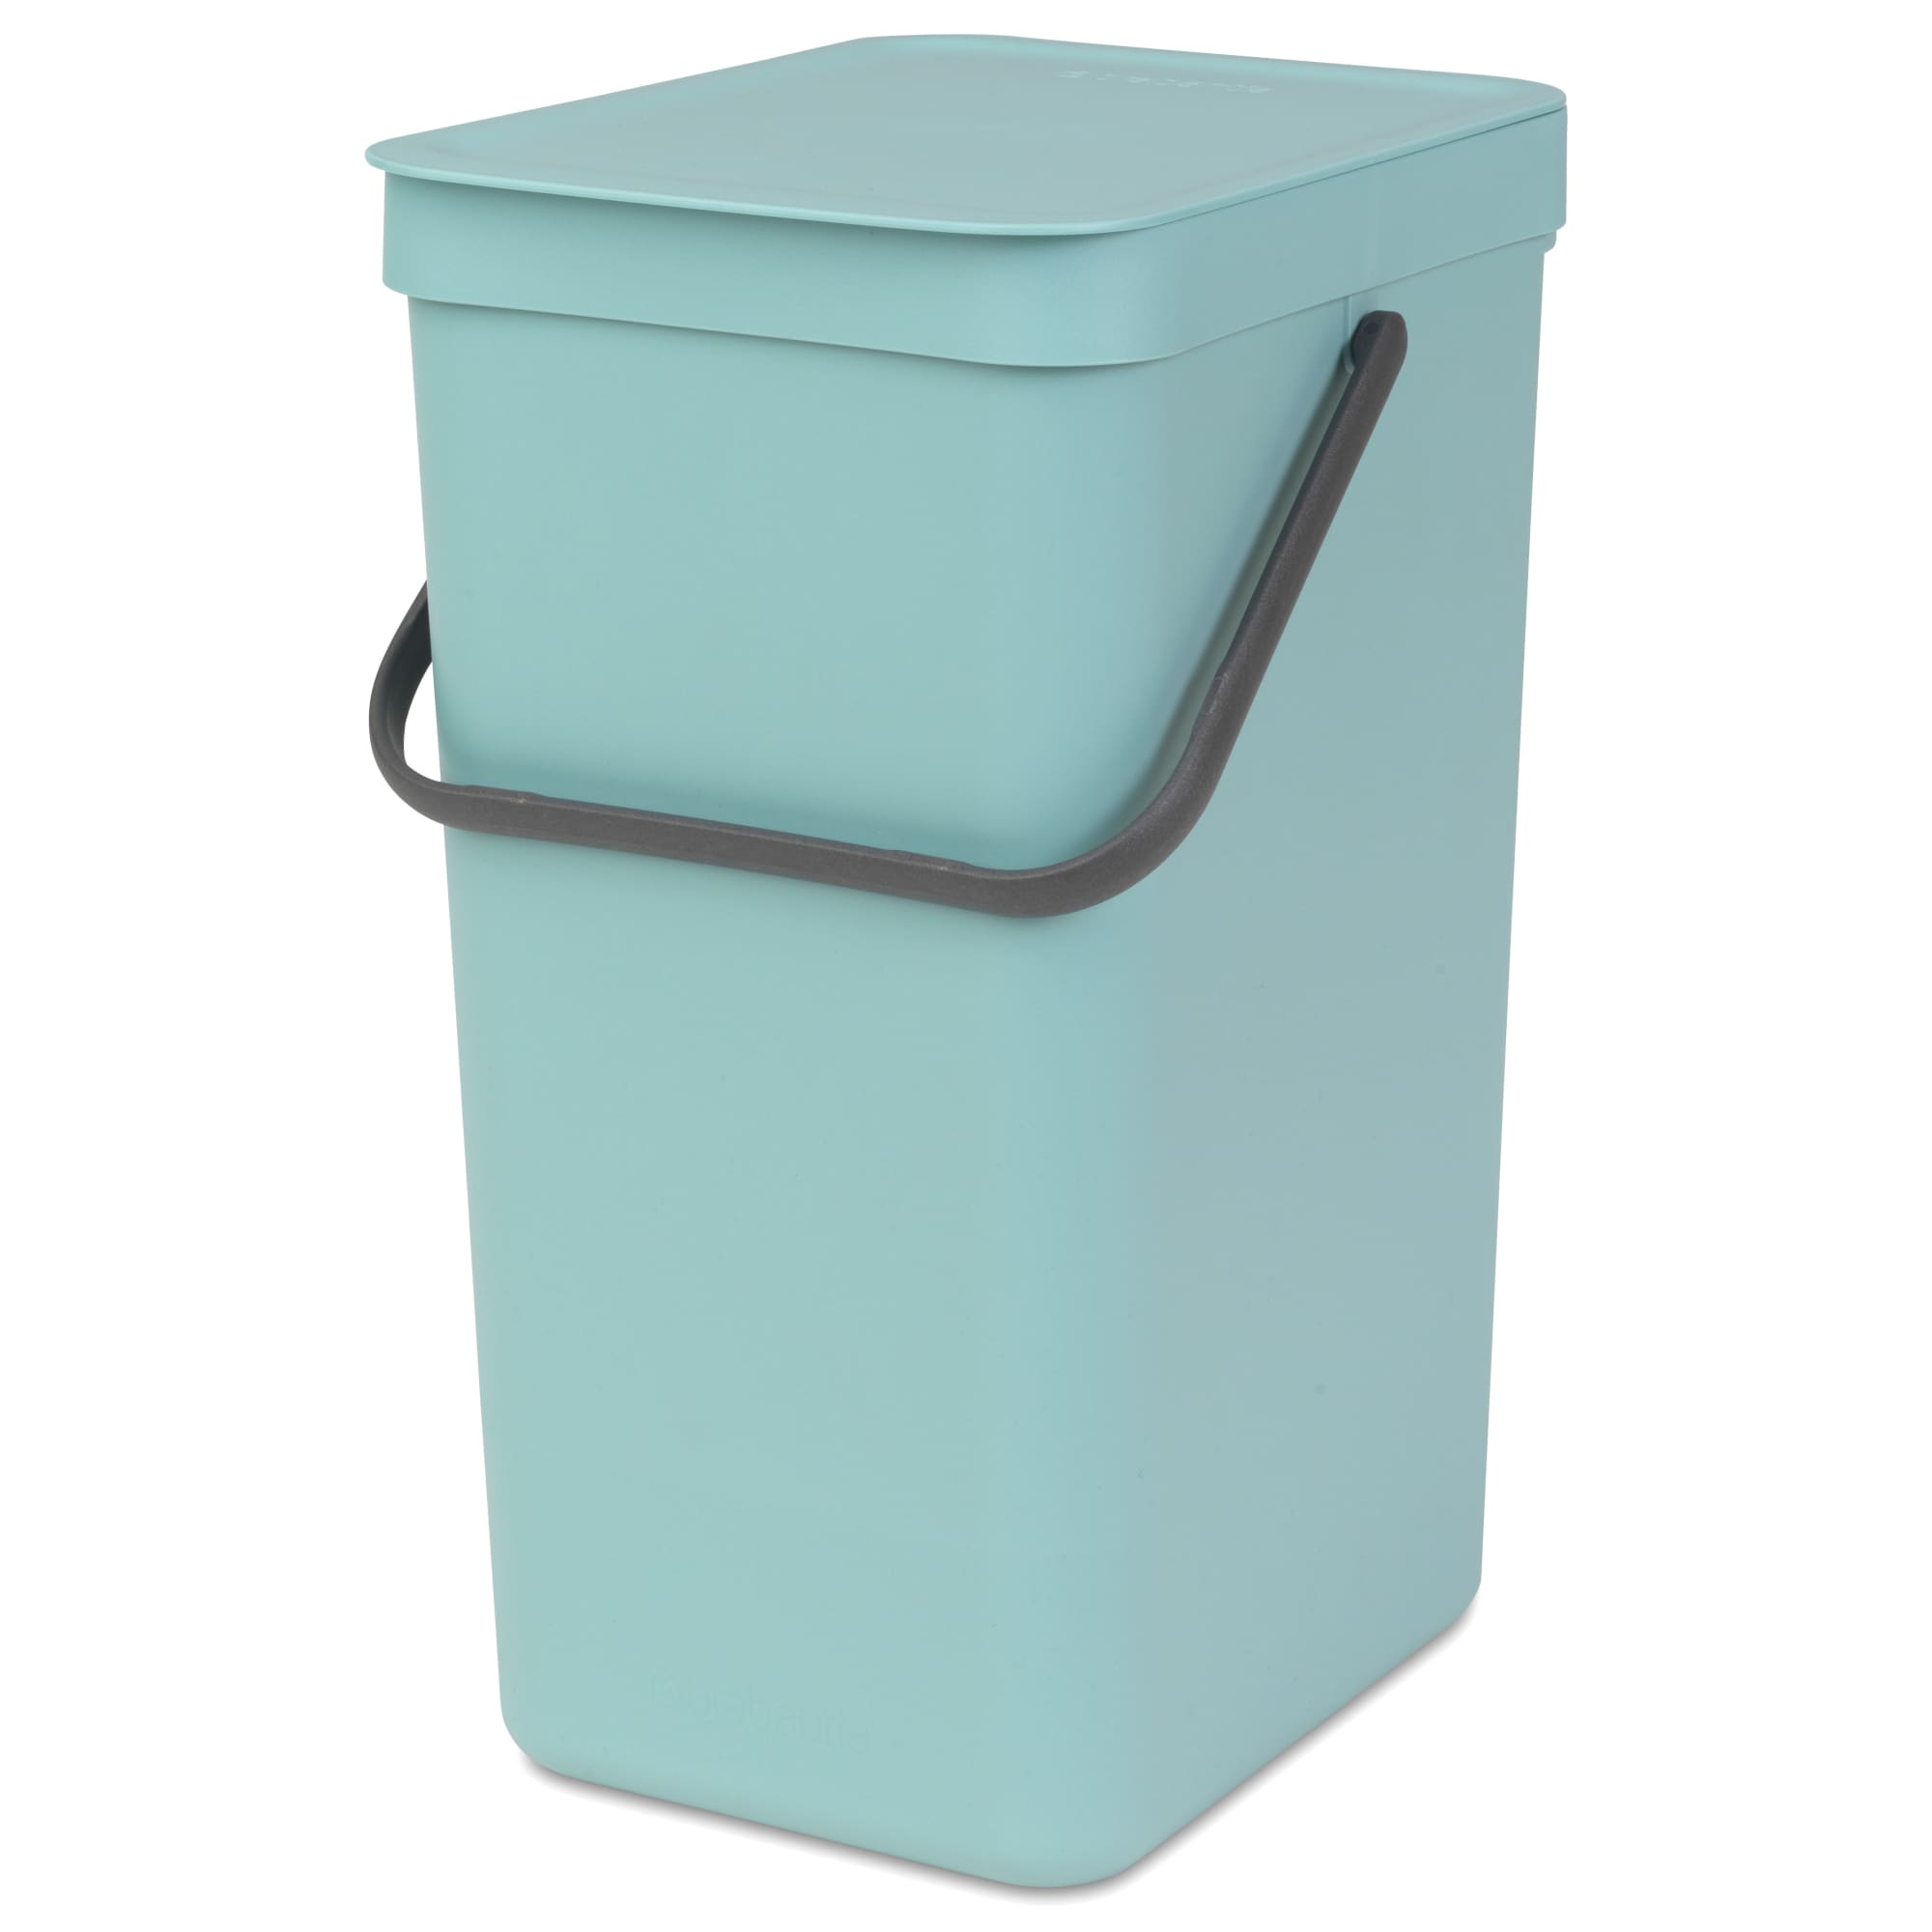 16 liter - Smart affaldssortering til hjemmet